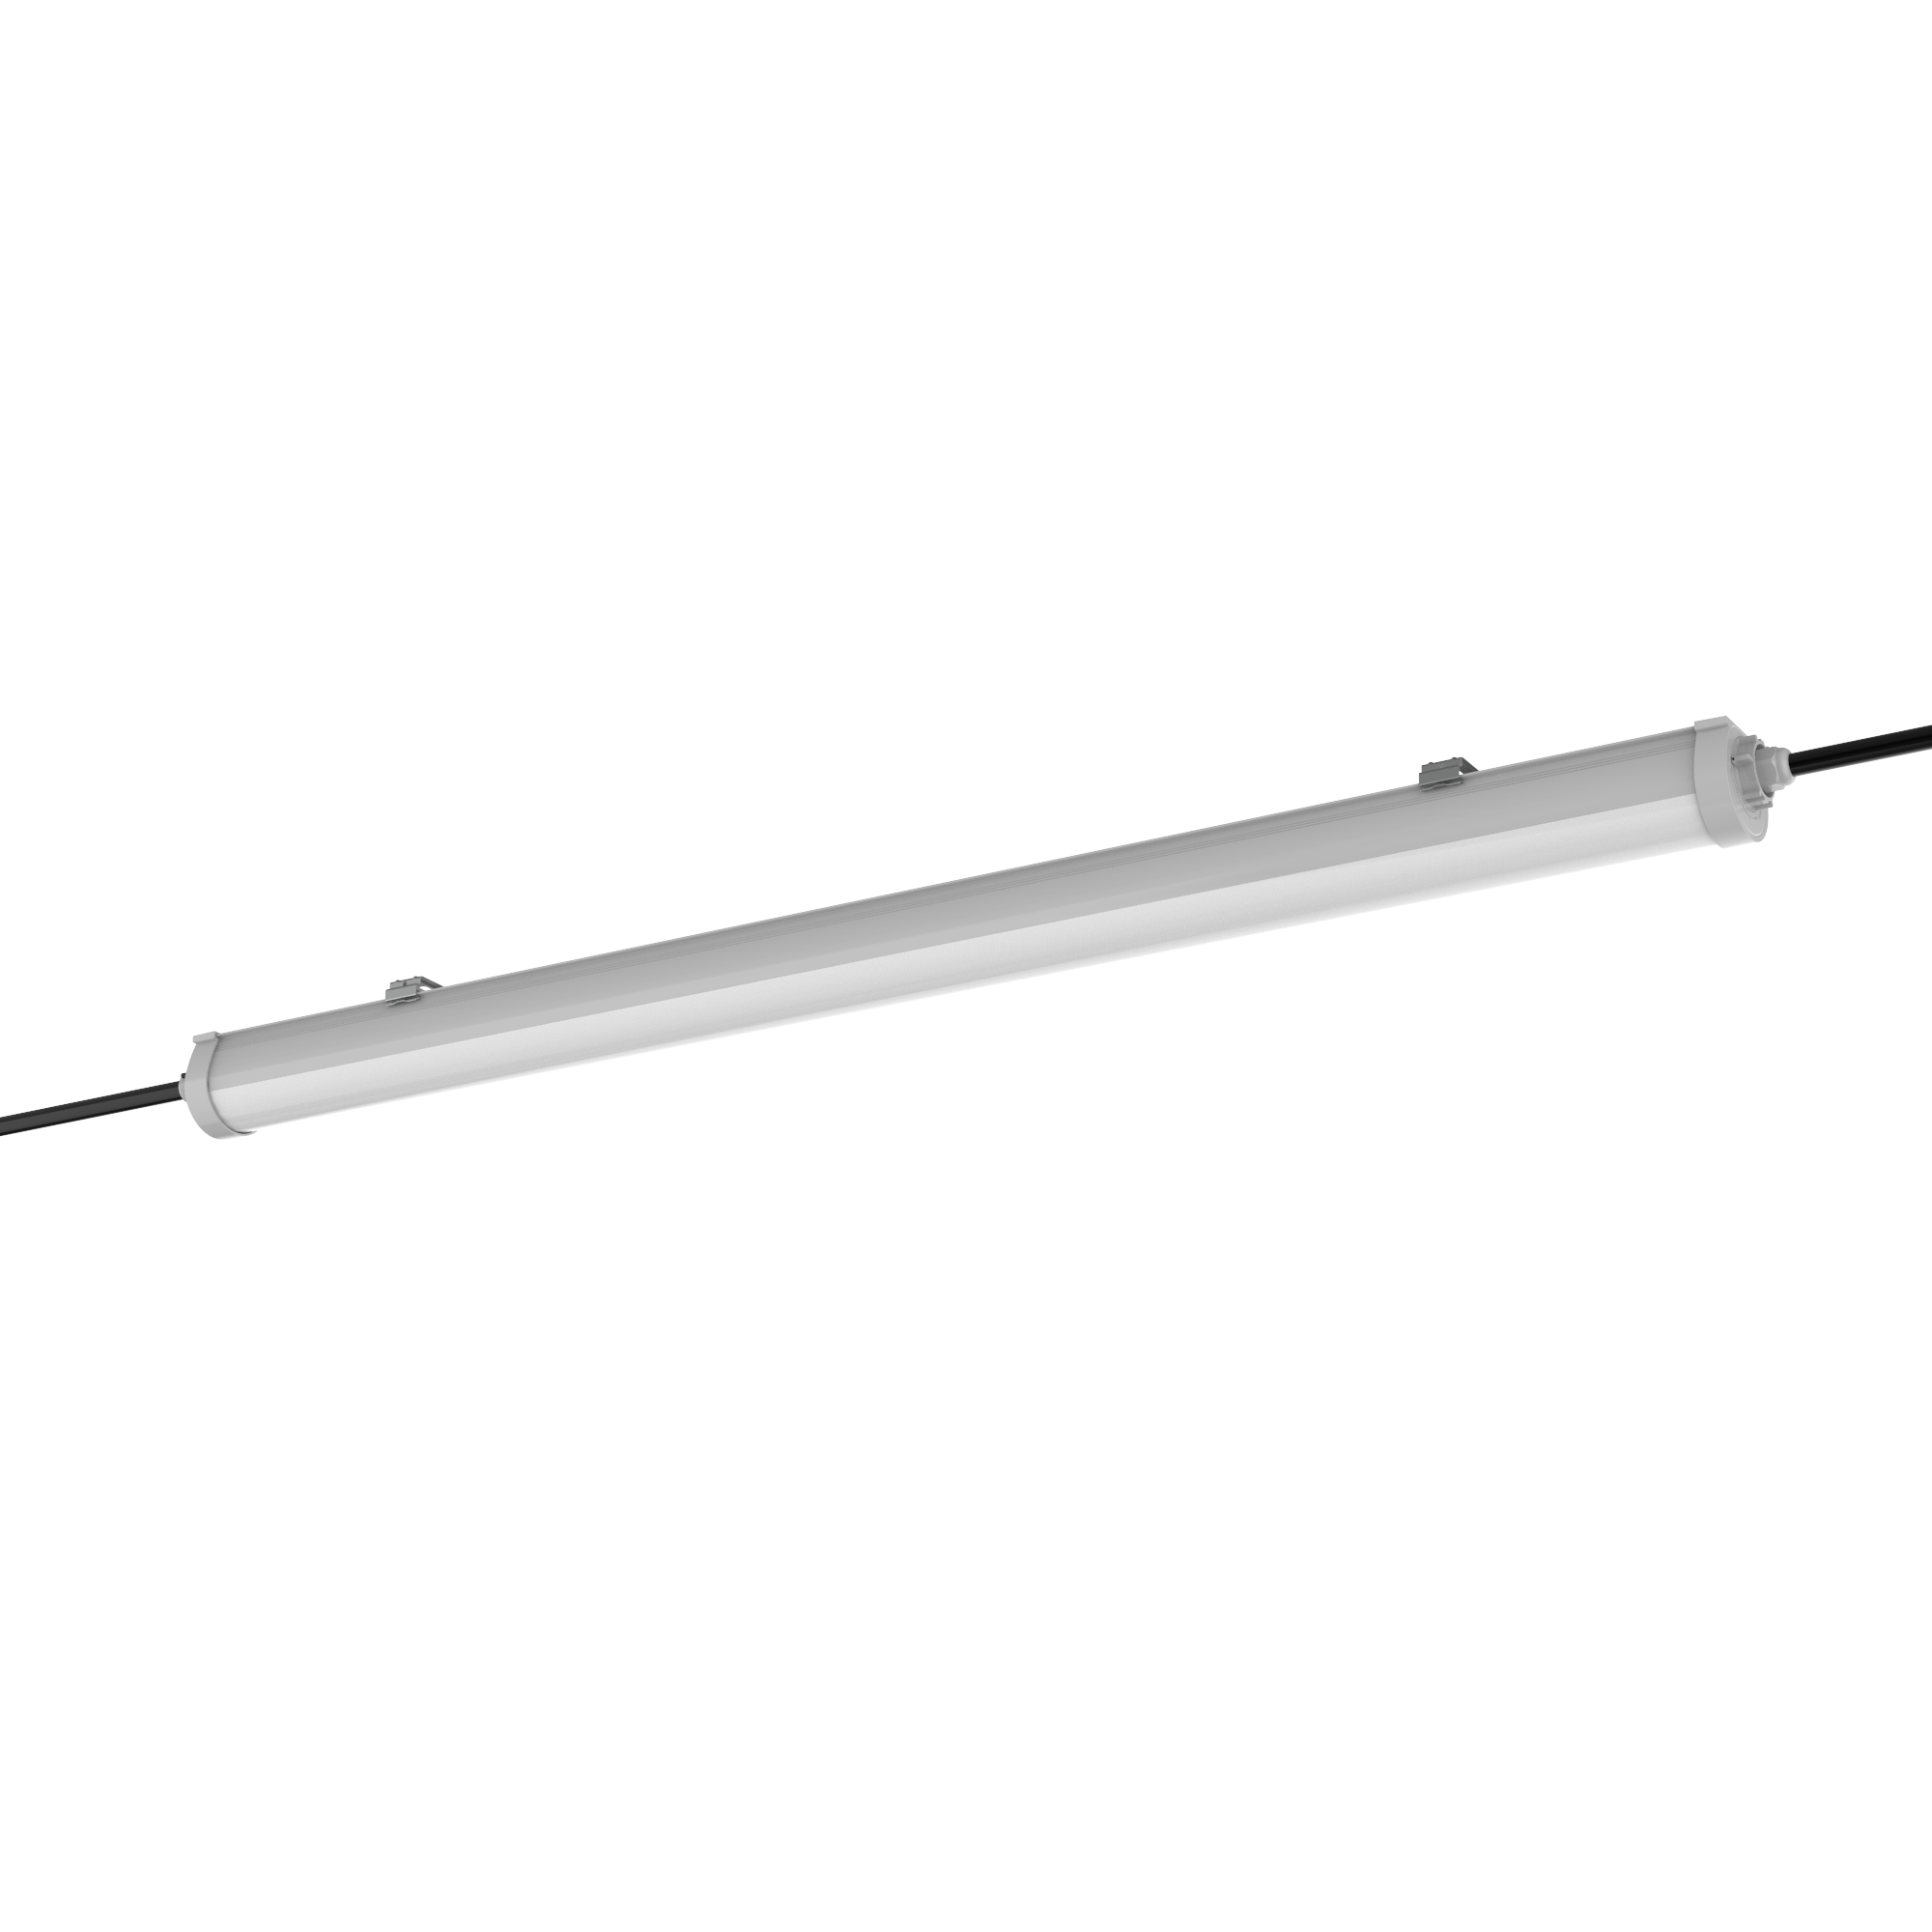 Engel LED Feuchtraumleuchte 60-120cm - IP65 Wasserdicht, mit 5 Jahren Garantie